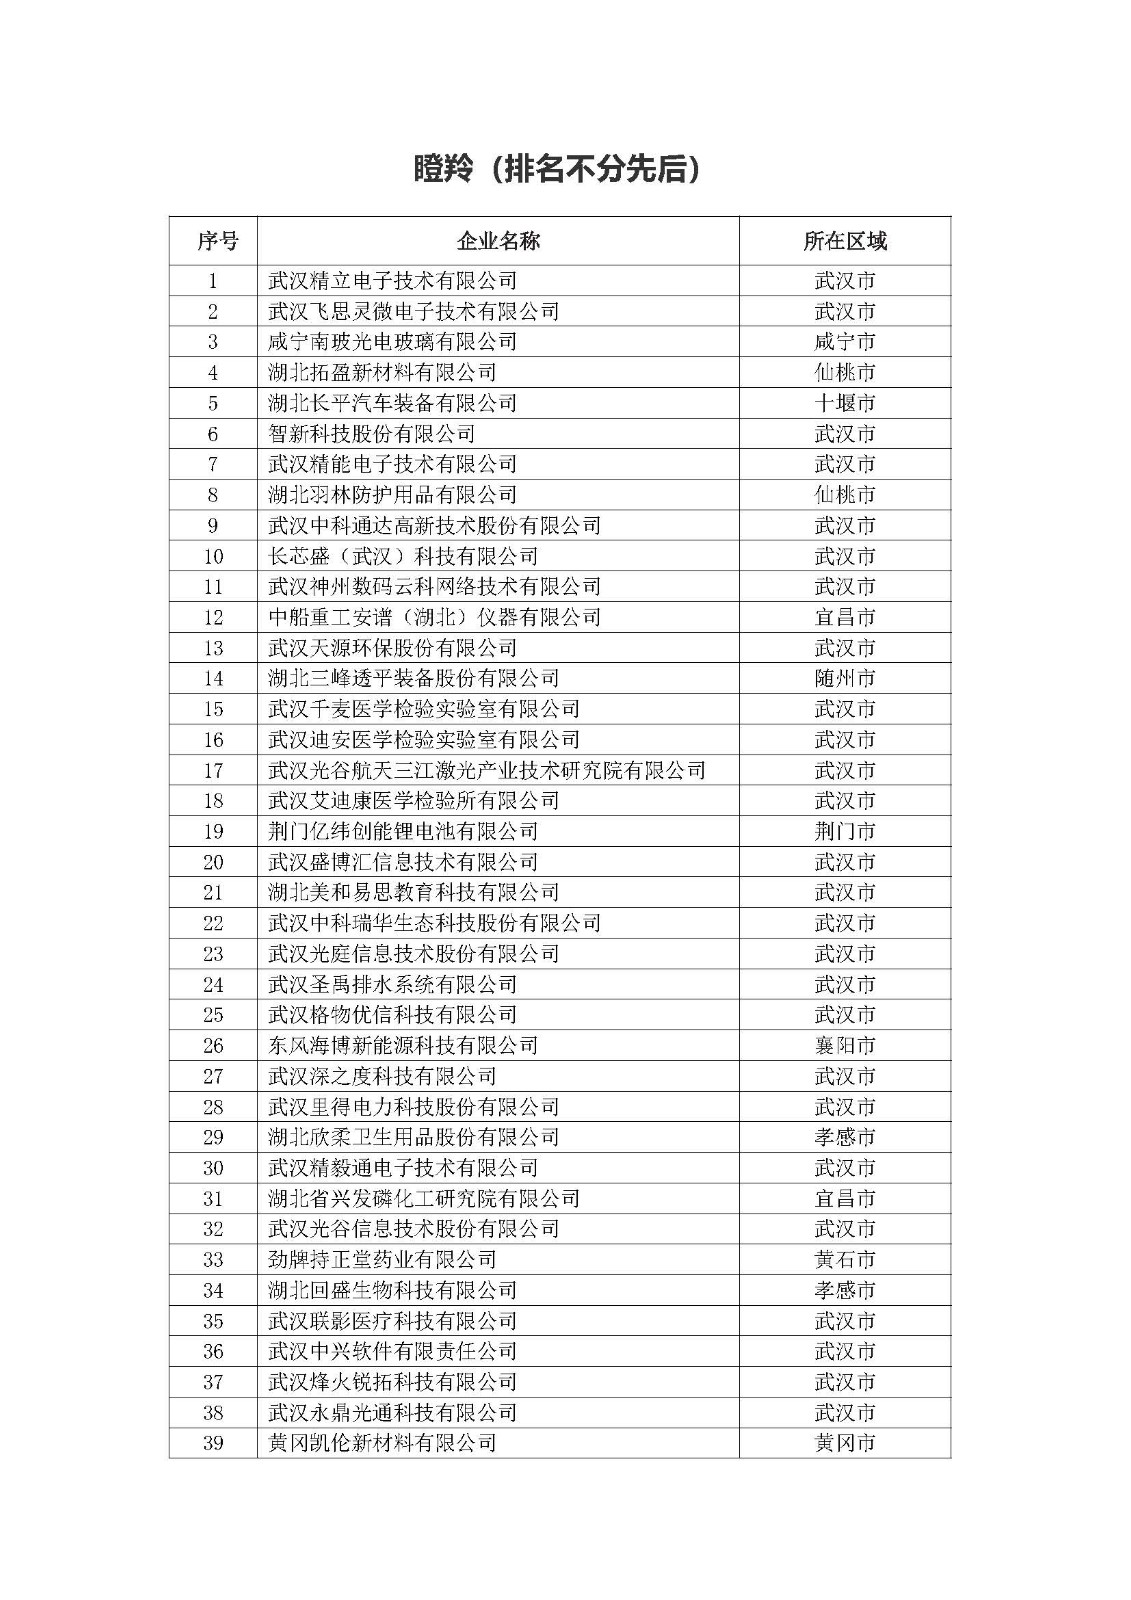 第一批拟入库湖北省科创“新物种”企业名单_页面_02.jpg